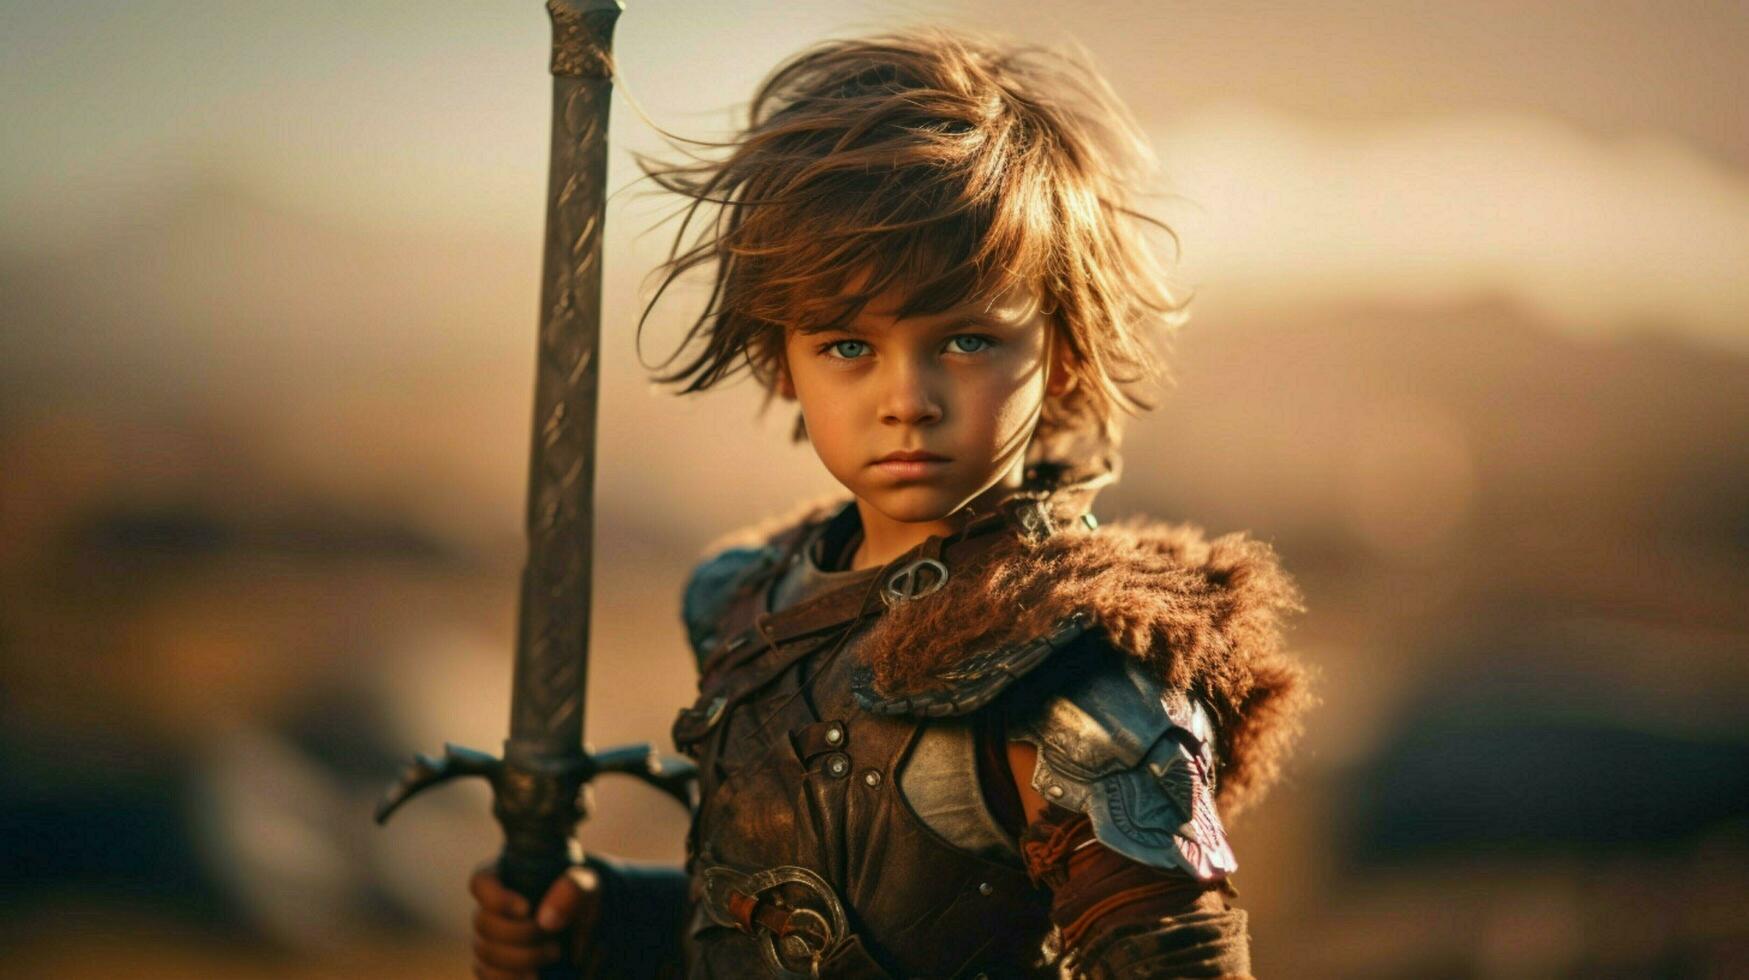 Guerreiro criança com espada jogos fictício mundo foto